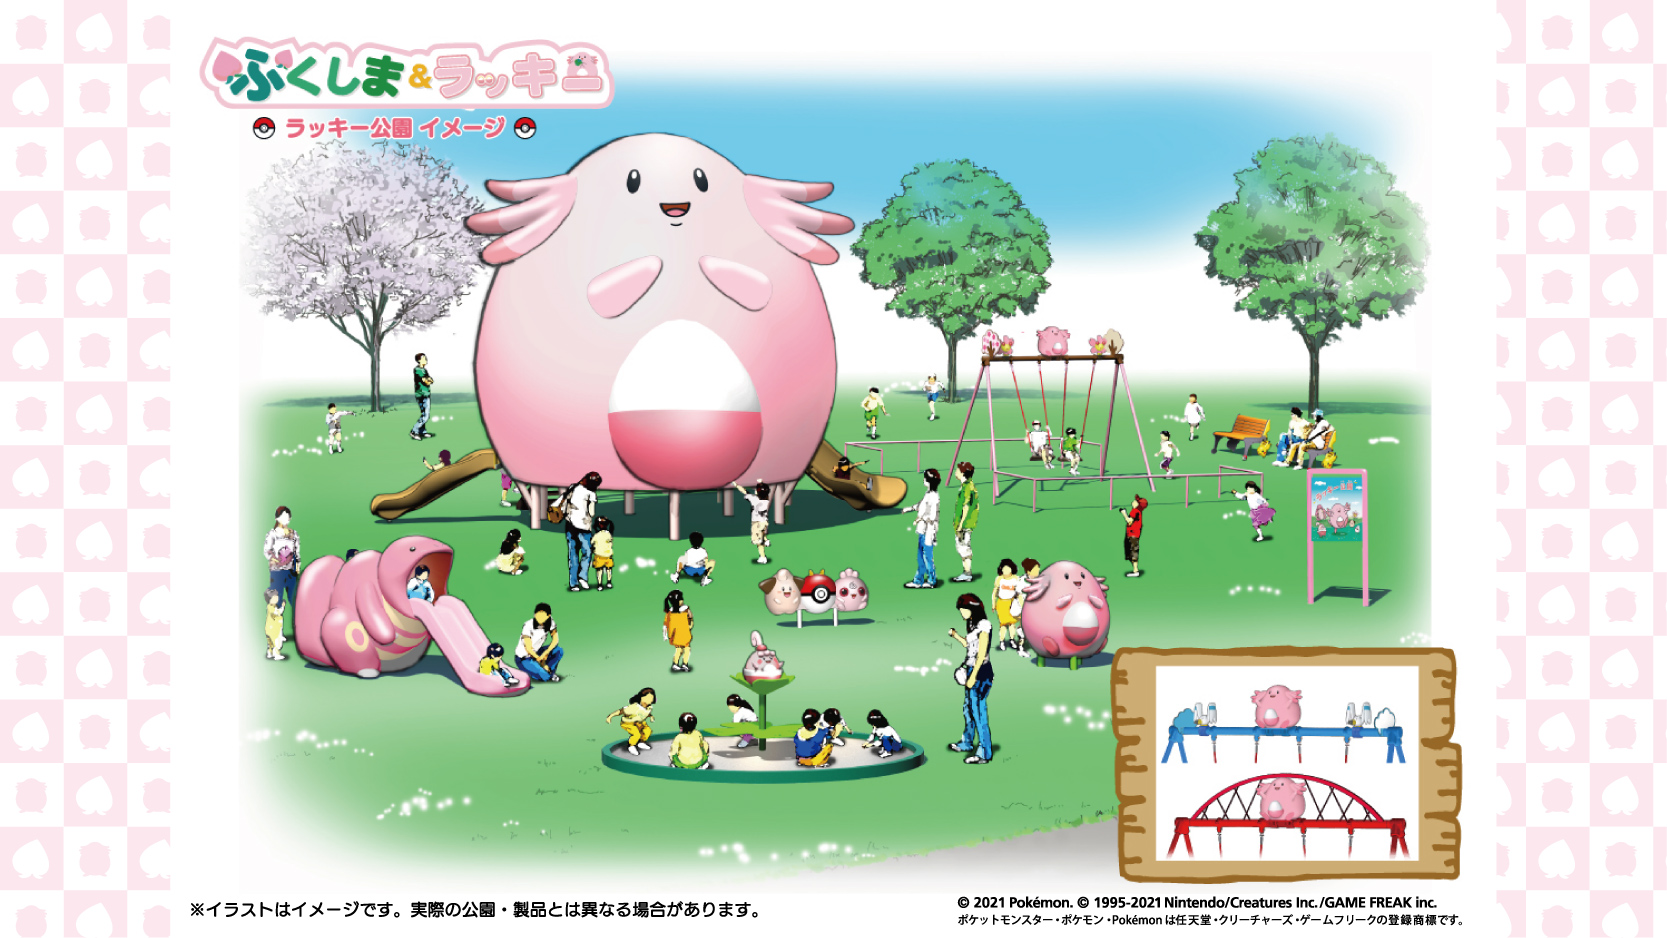 巨大ラッキー遊具が目印 福島県4市町村に ラッキー公園 開園決定 Game Watch